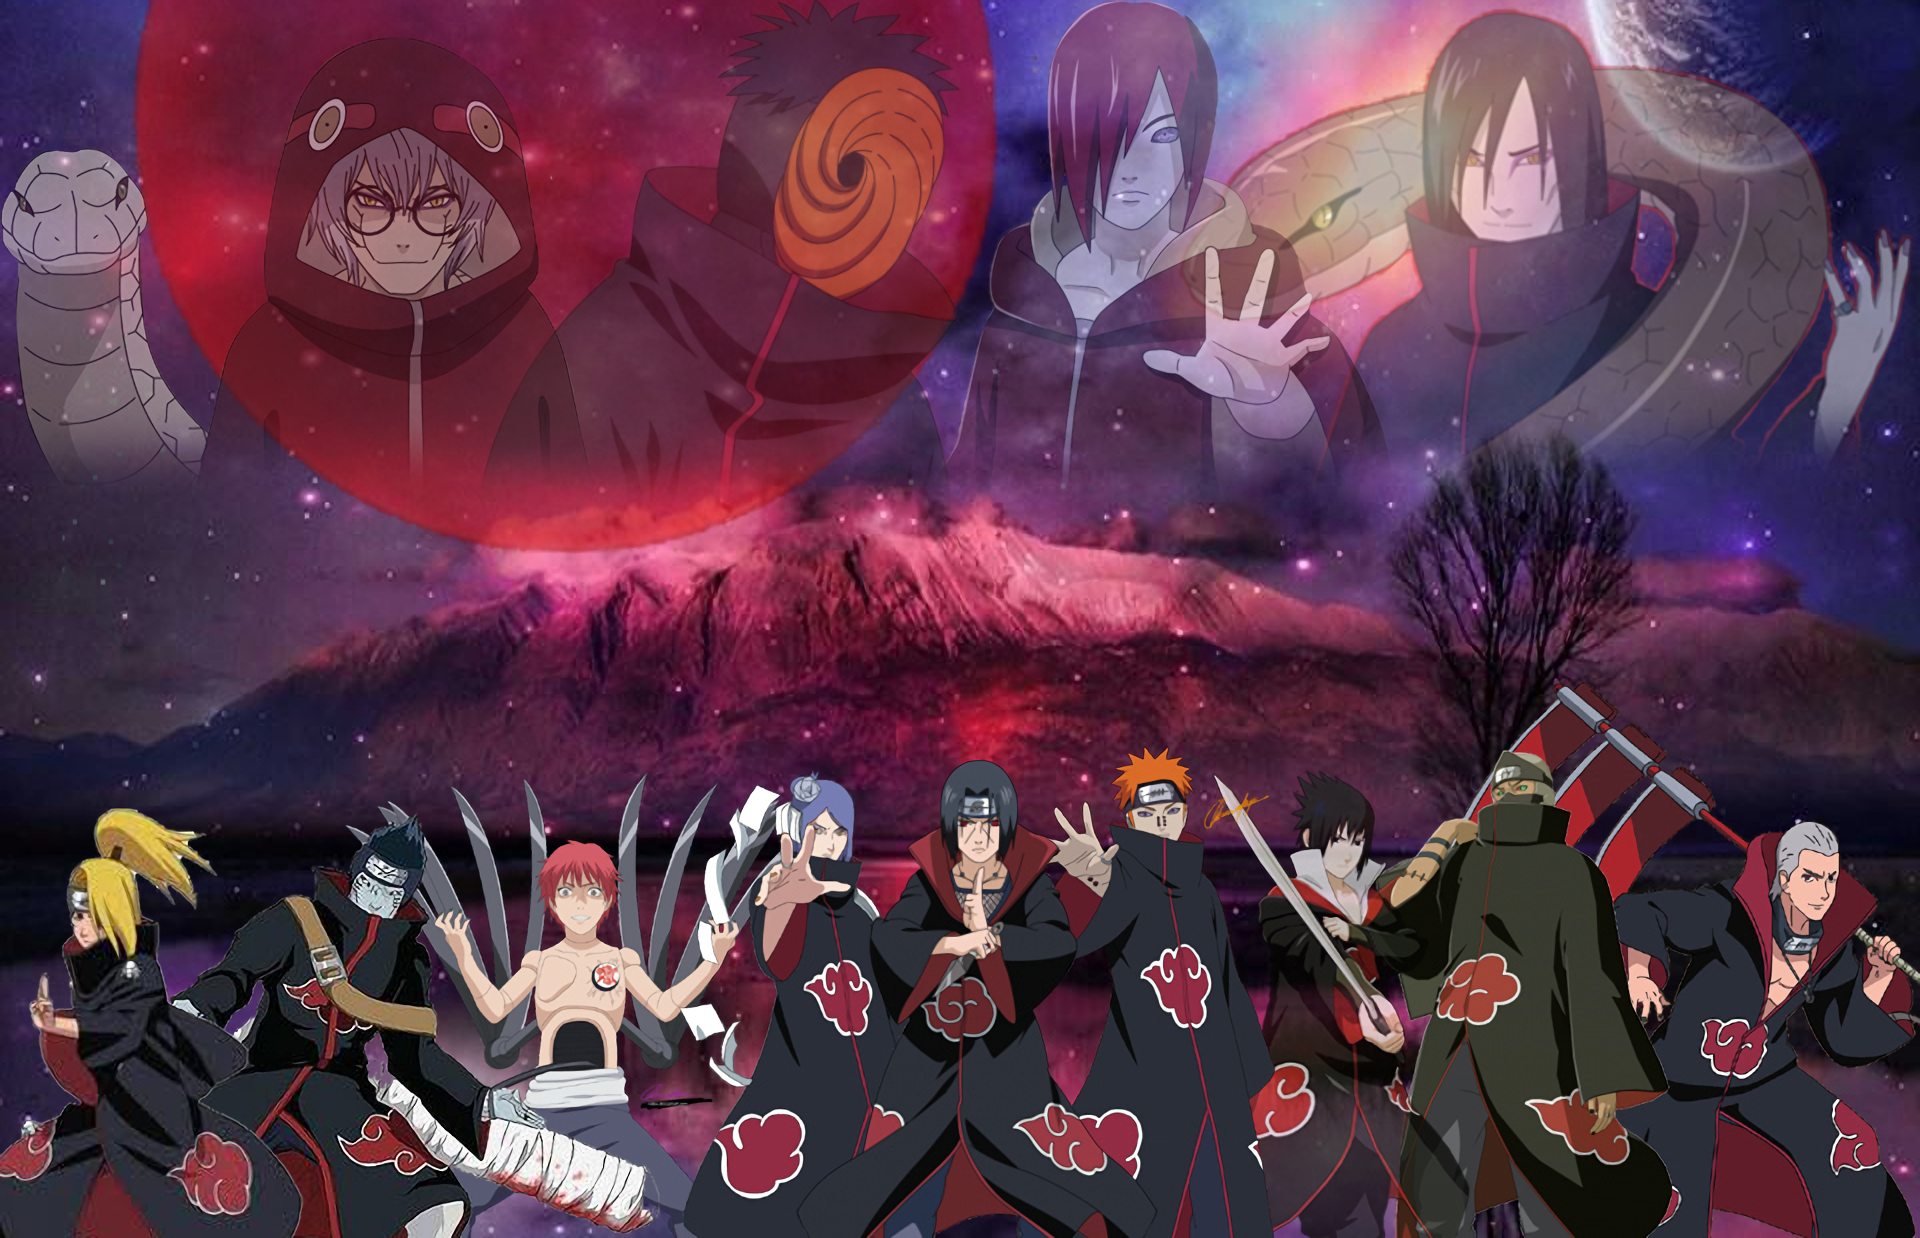 70+ Akatsuki (Naruto) HD Wallpapers and Backgrounds